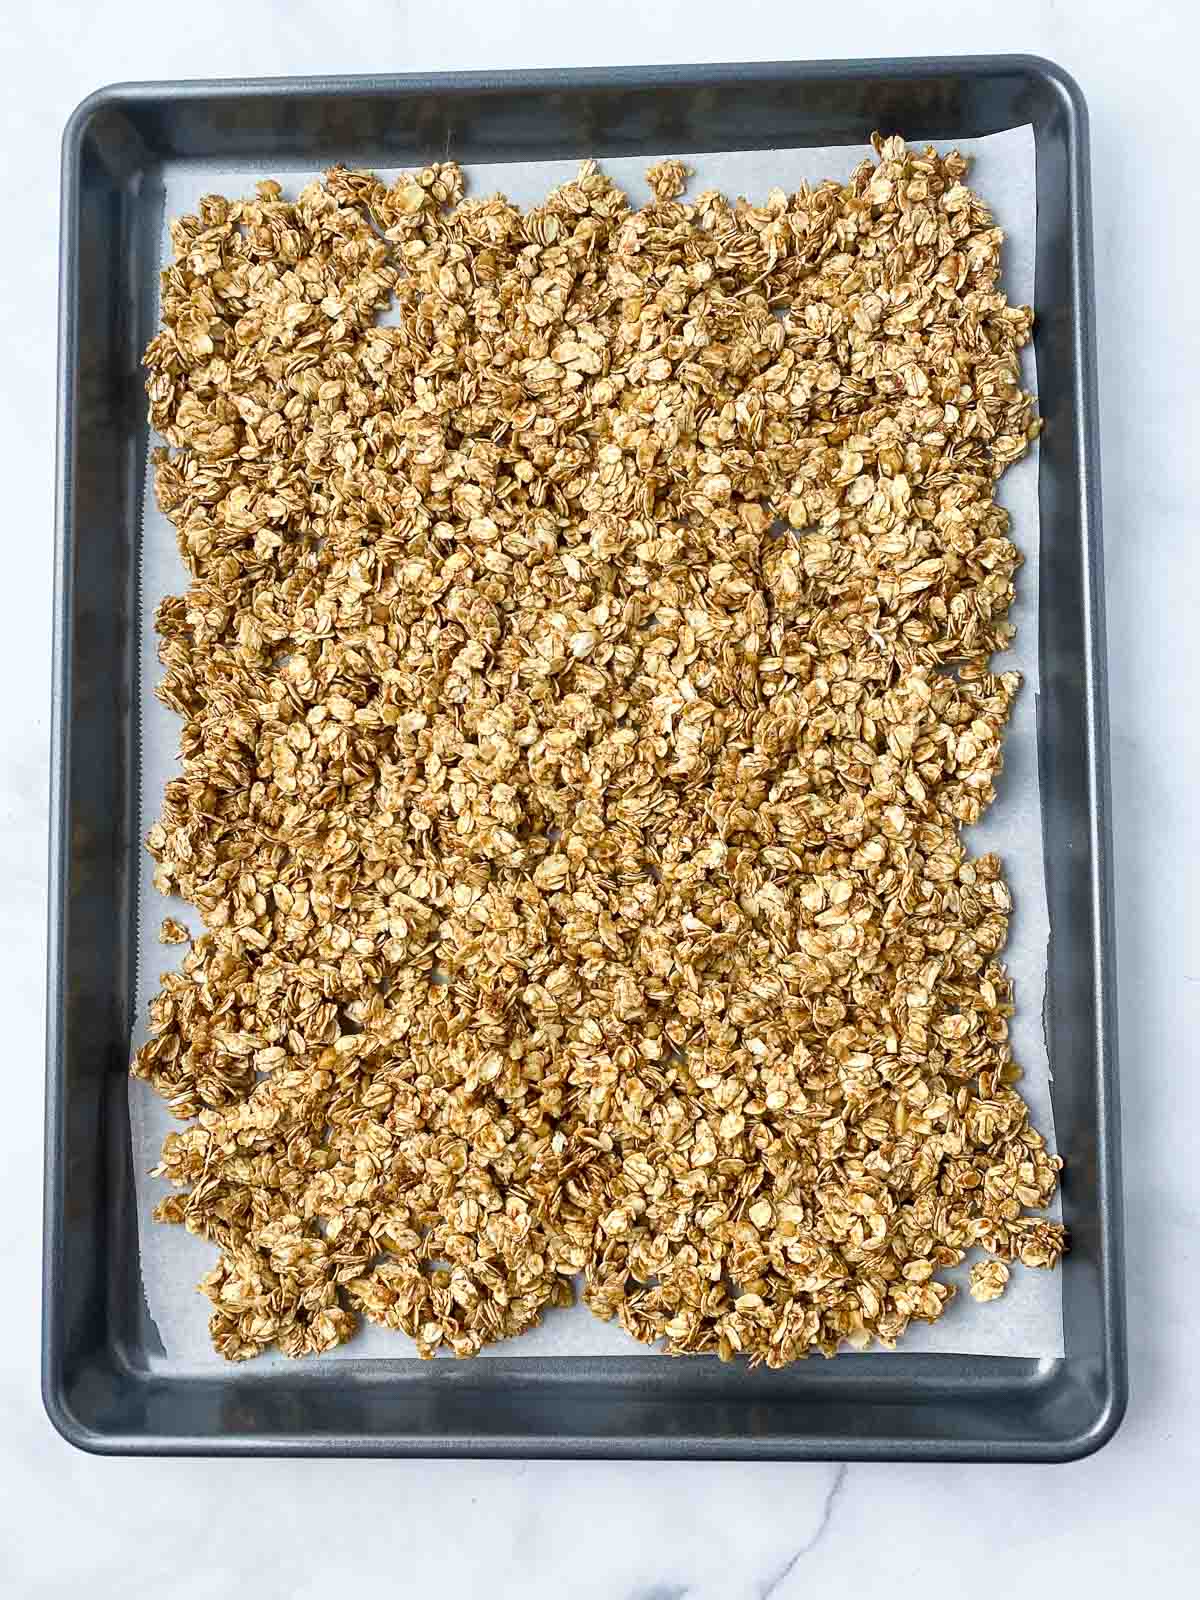 Unbaked granola on baking sheet.